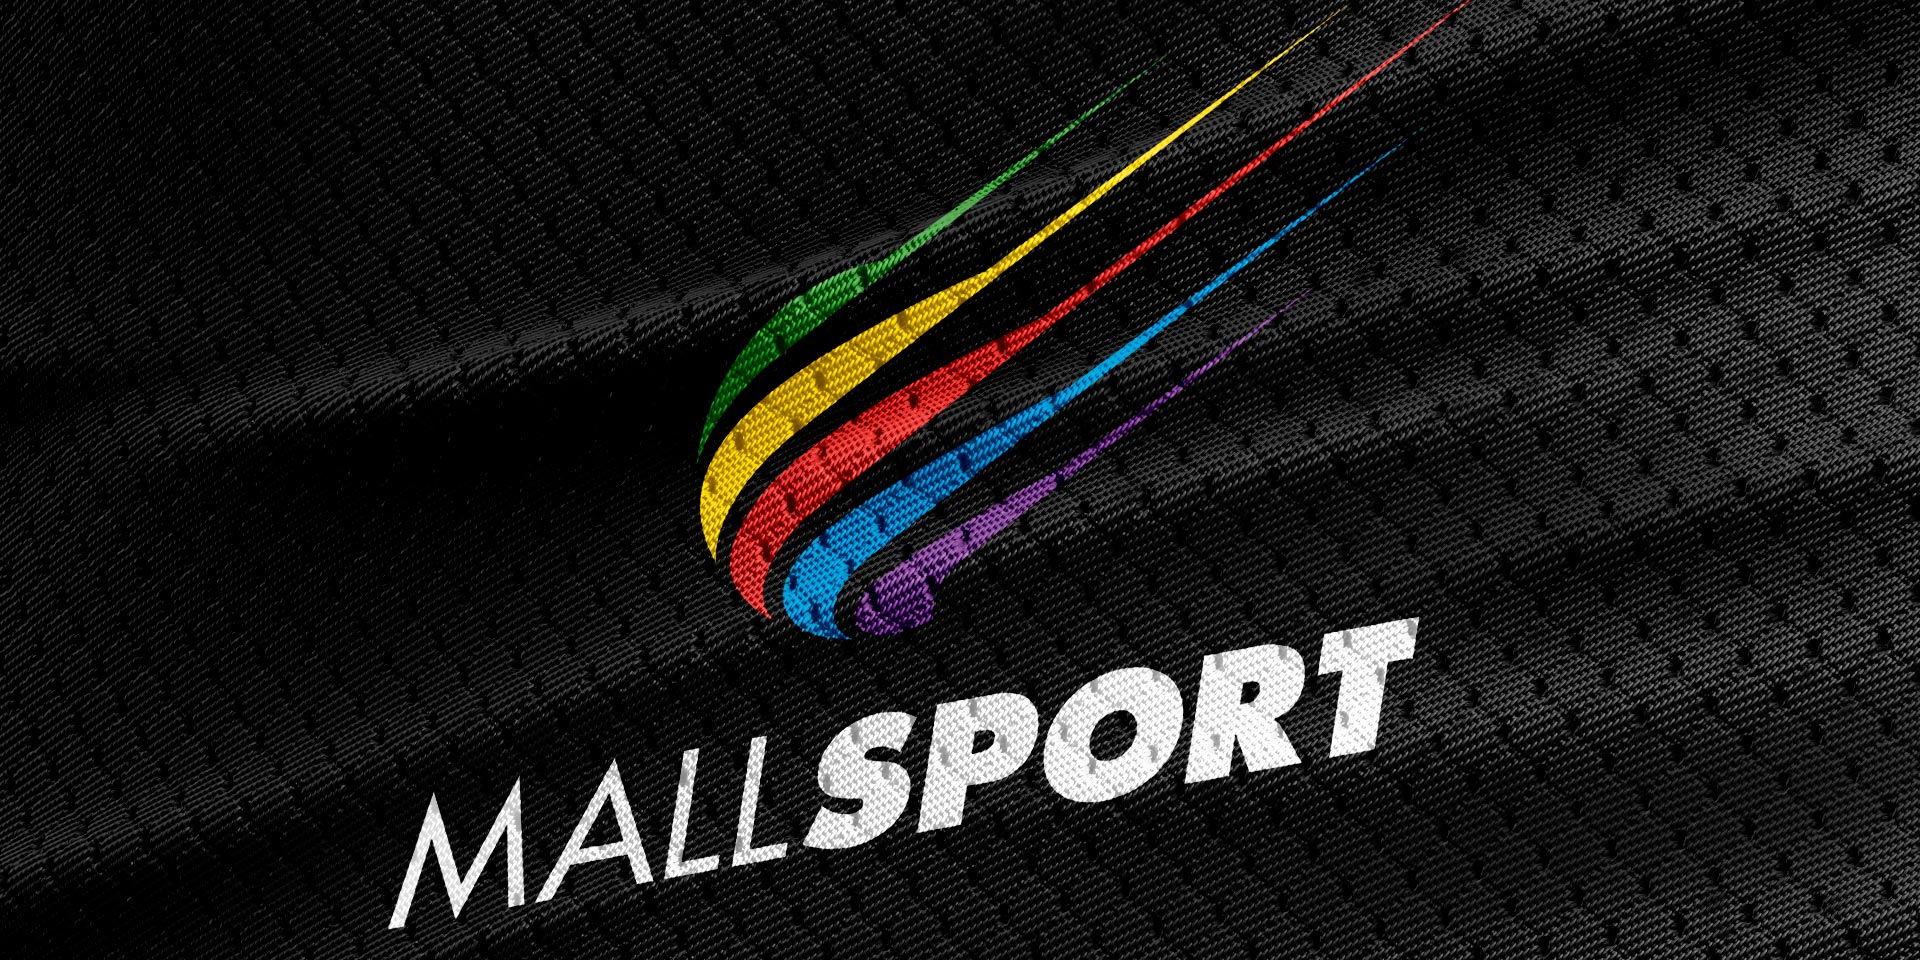 Mall Sport